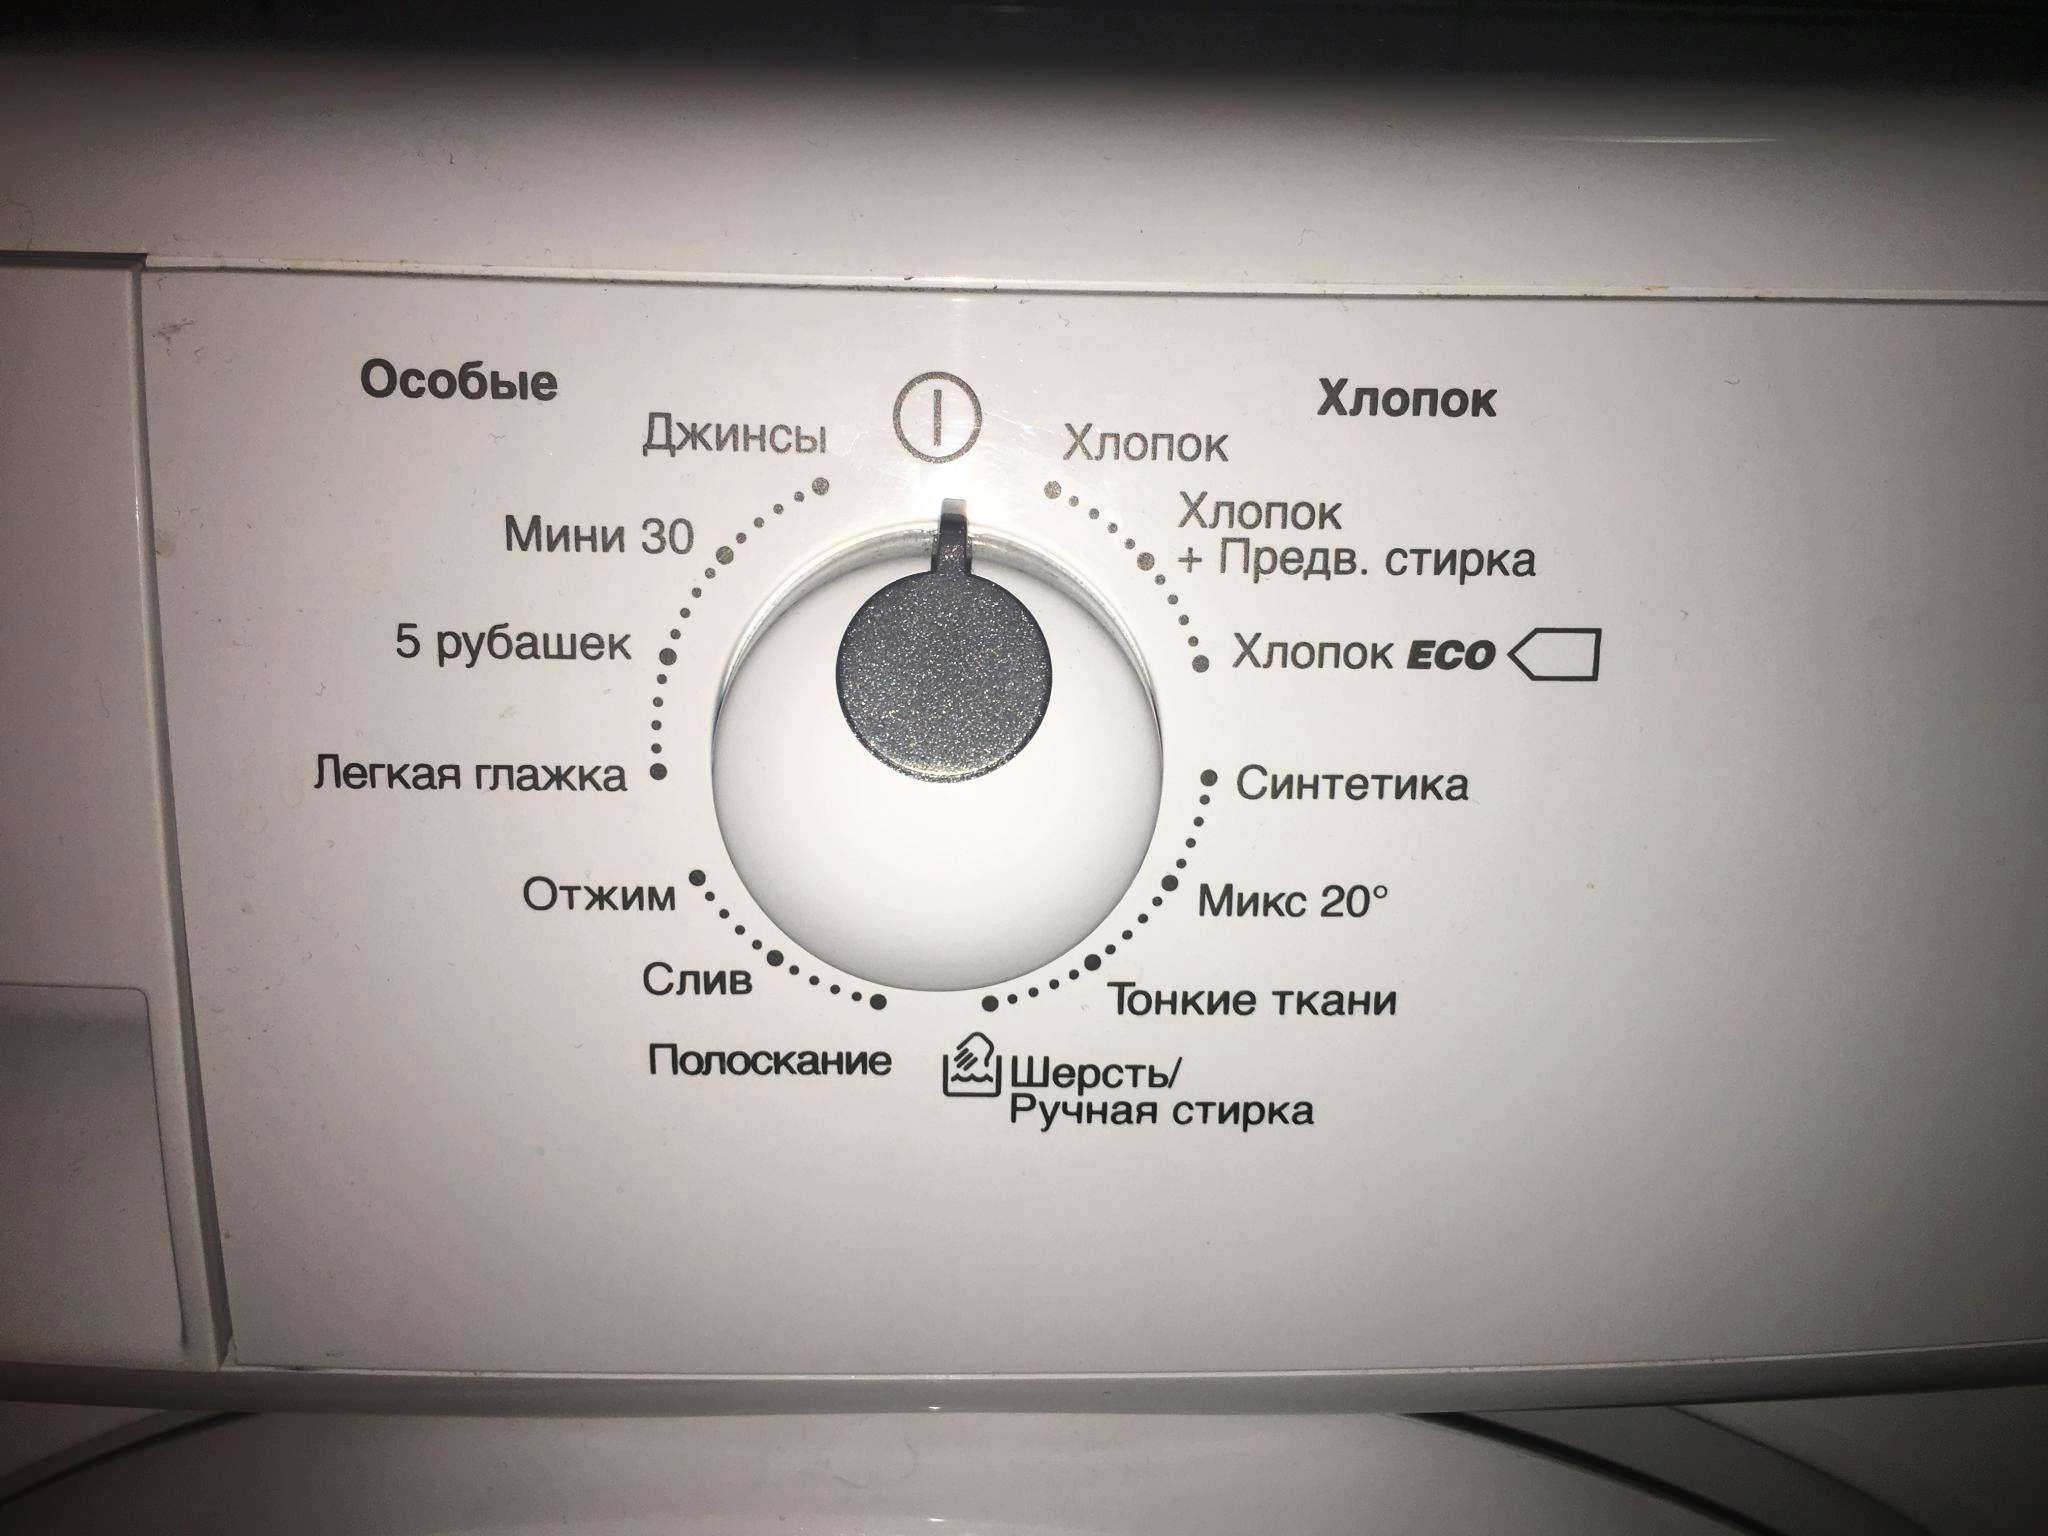 Основные неисправности стиральной машины zanussi